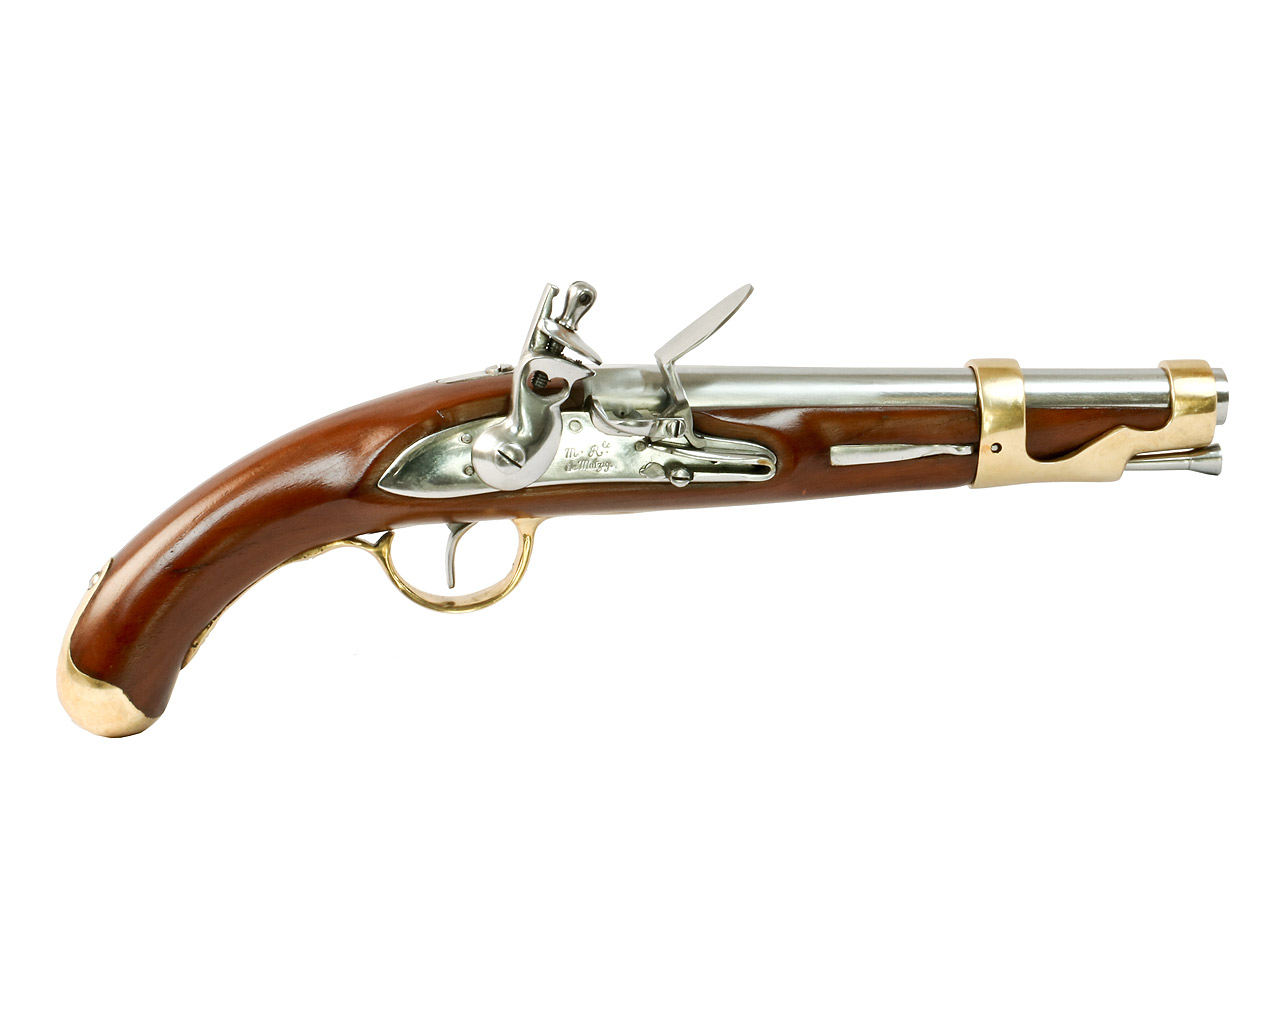 Vorderlader Steinschlosspistole French 1766, Kavalleriepistole, Kaliber .67 bzw. 17 mm (P18)